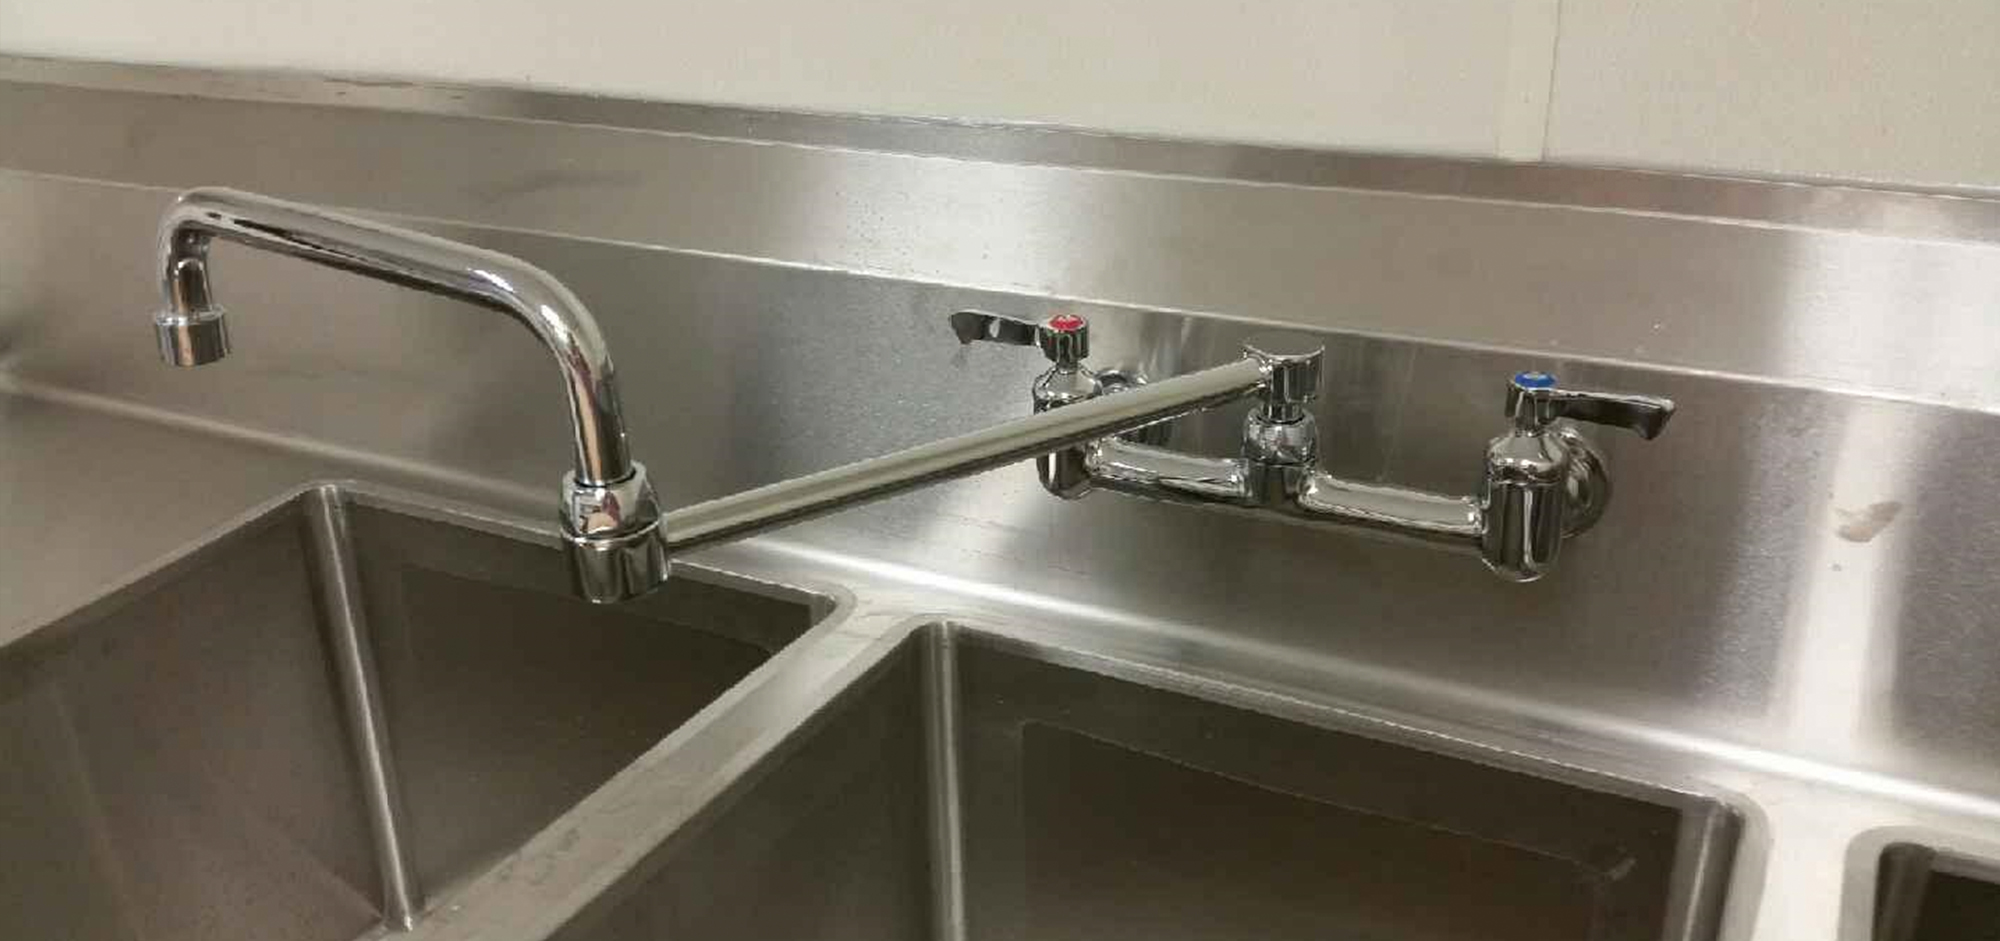 Kitchen sink and faucet plumbing by Merritt Plumbing & Heating